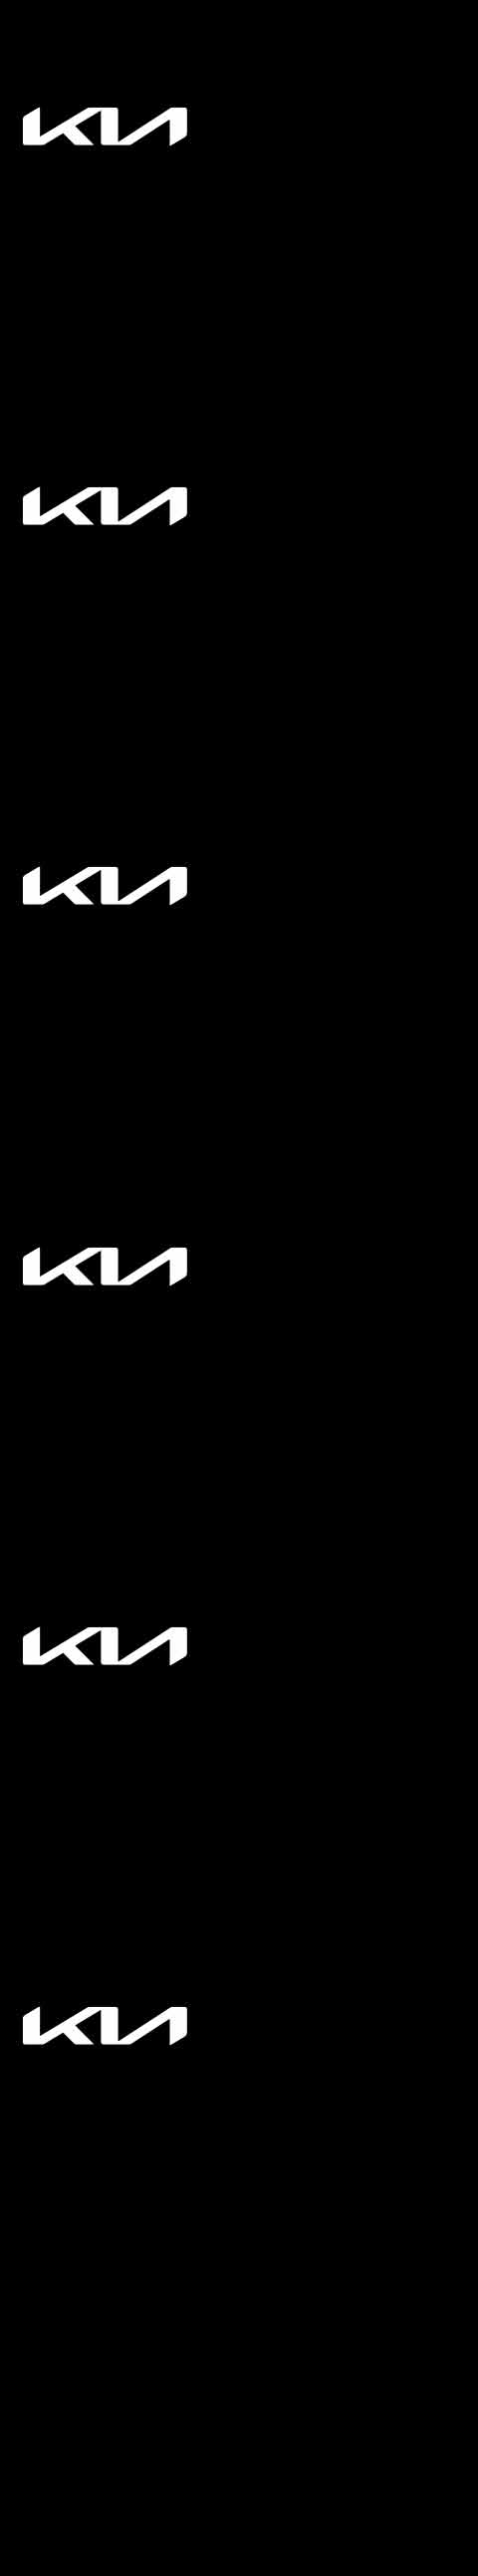 Kia logo on a black background